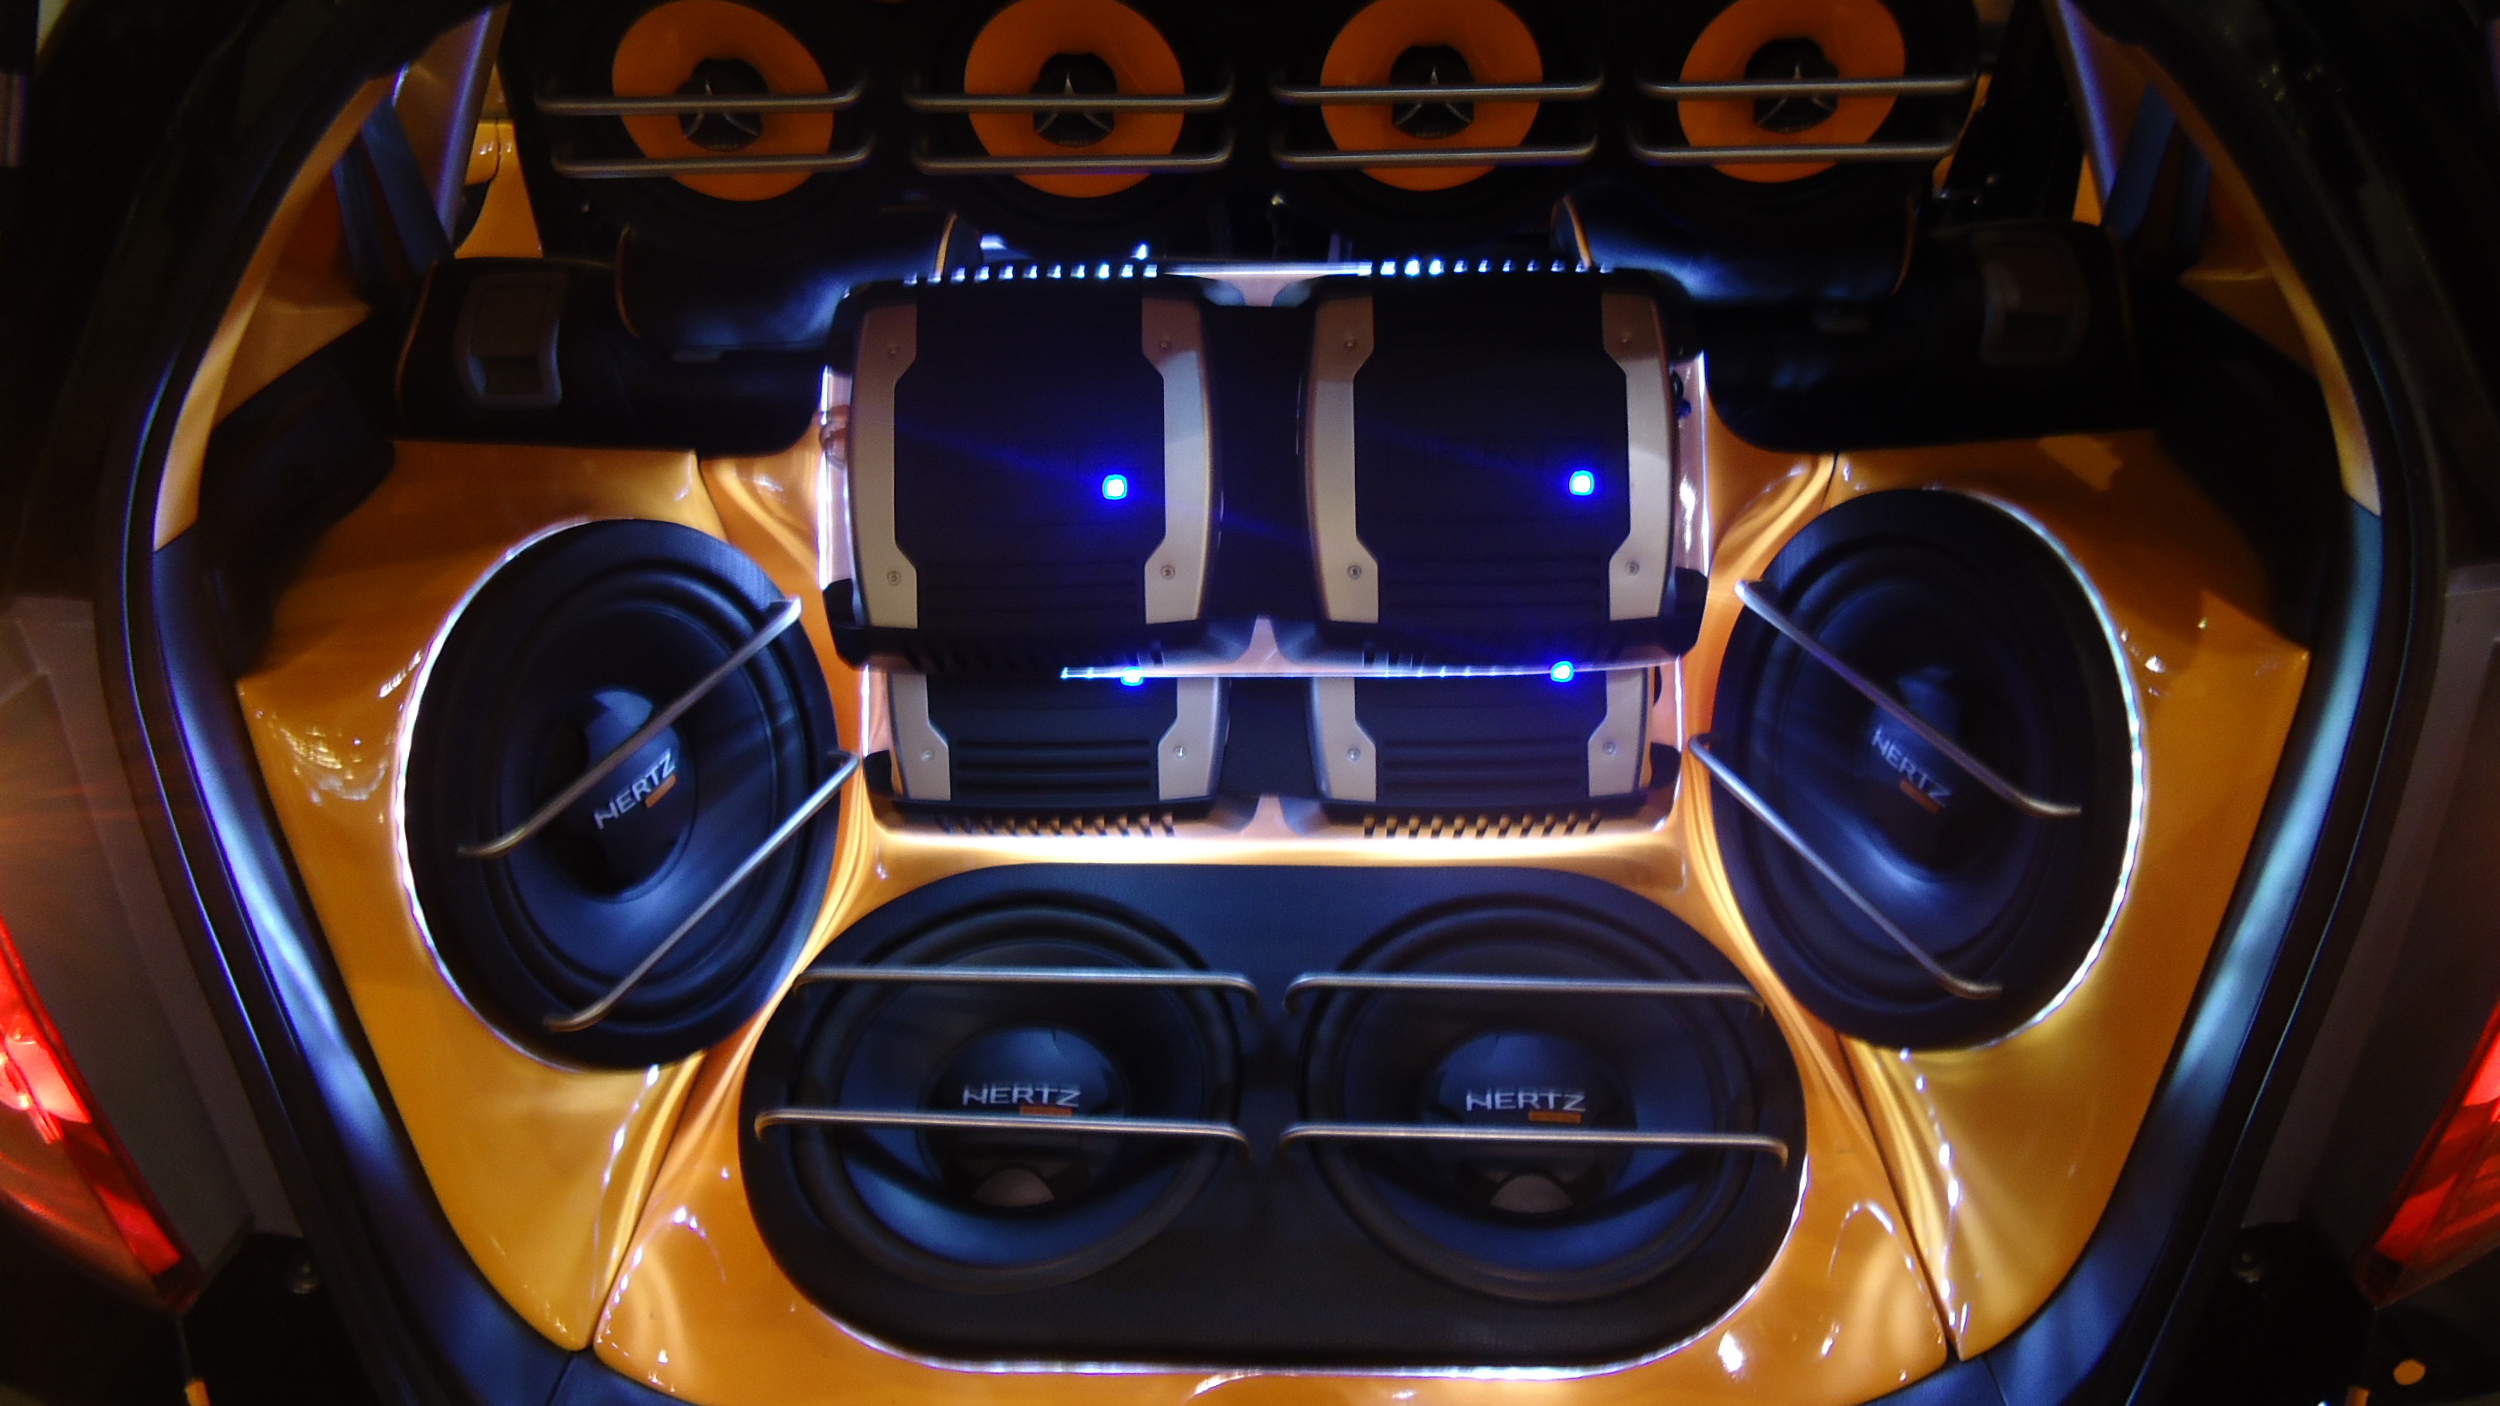 Honda Fit автозвук. Car Audio в Bentley Continental 2008 Speakers. Хонда фит SPL автозвук. Car Audio автомобильные динамики. Музыка в тачку слушать